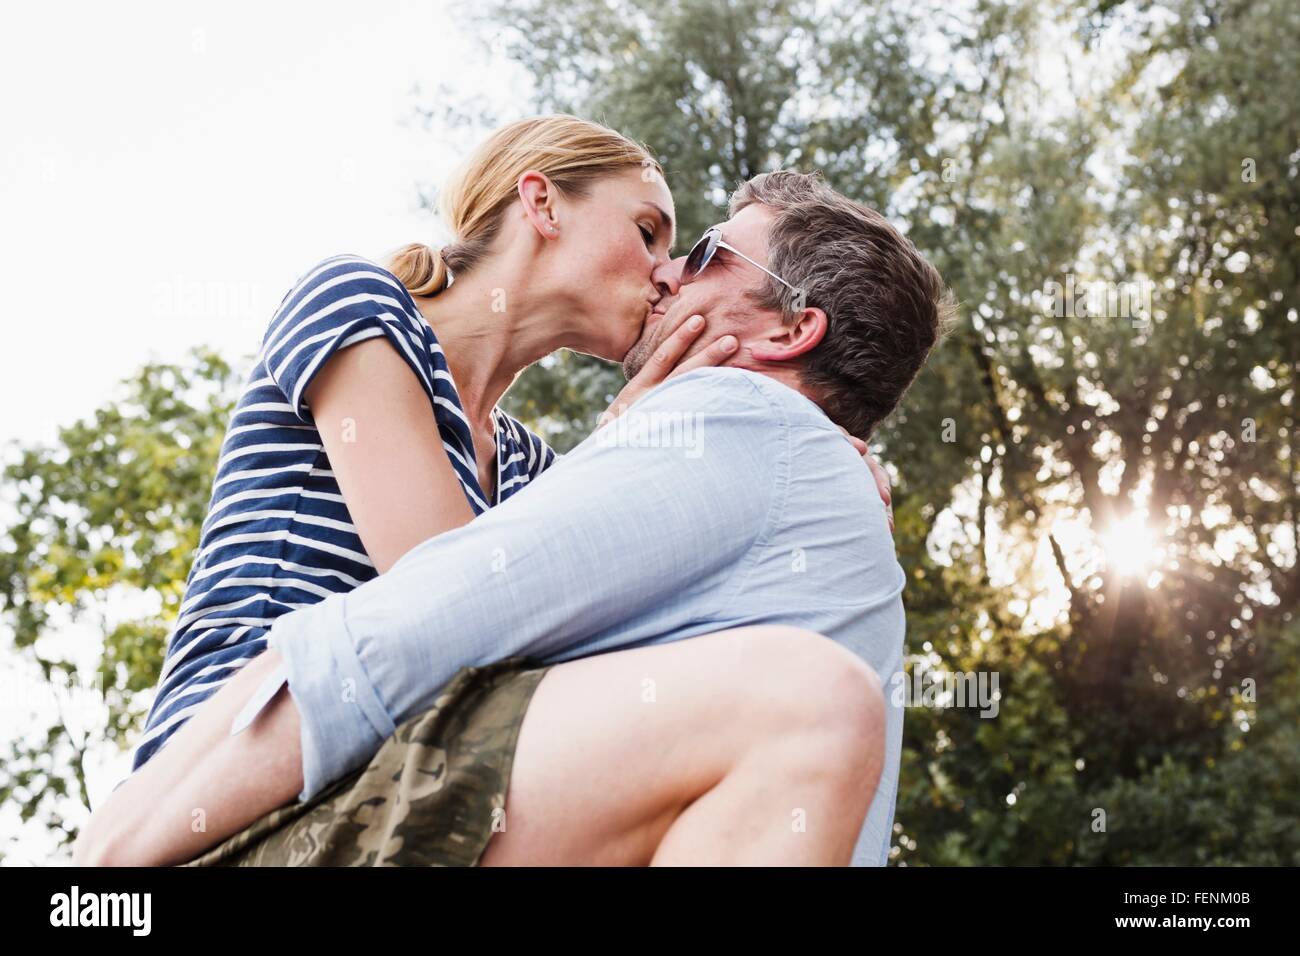 Low angle view of couple baiser passionné dans park Banque D'Images